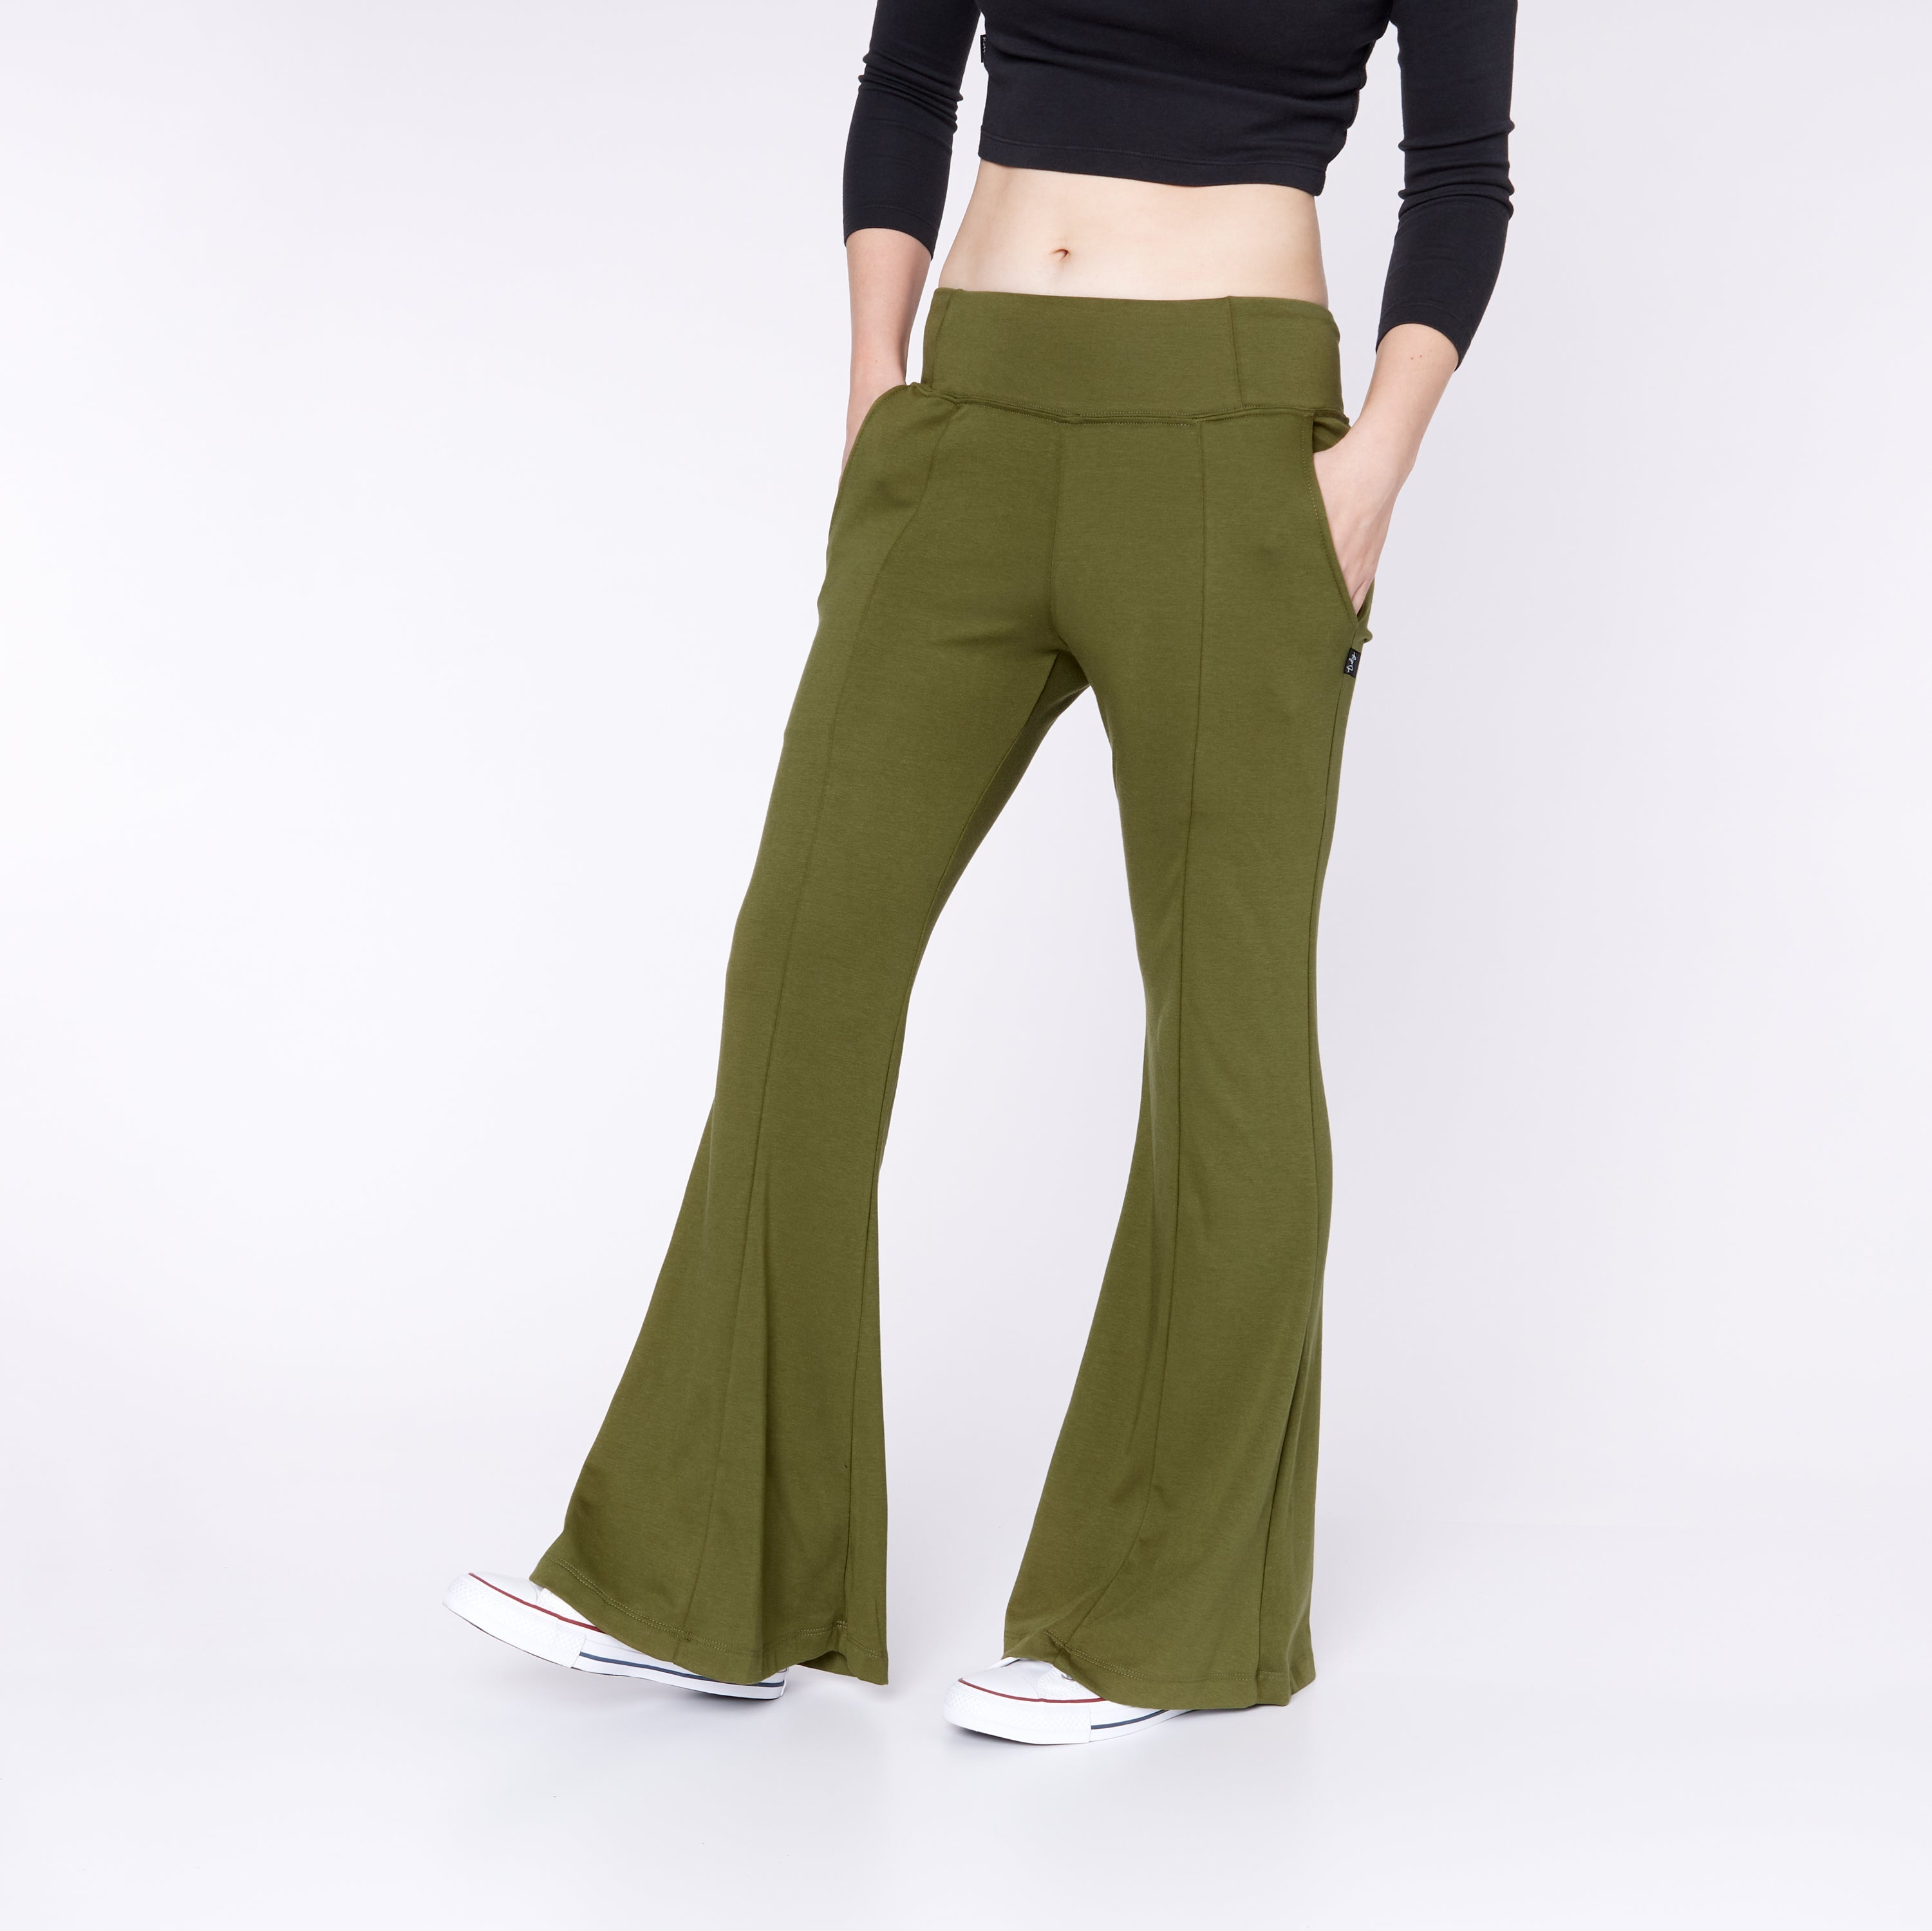 Grande Mode Solid Women Olive, Olive Track Pants - Buy Grande Mode